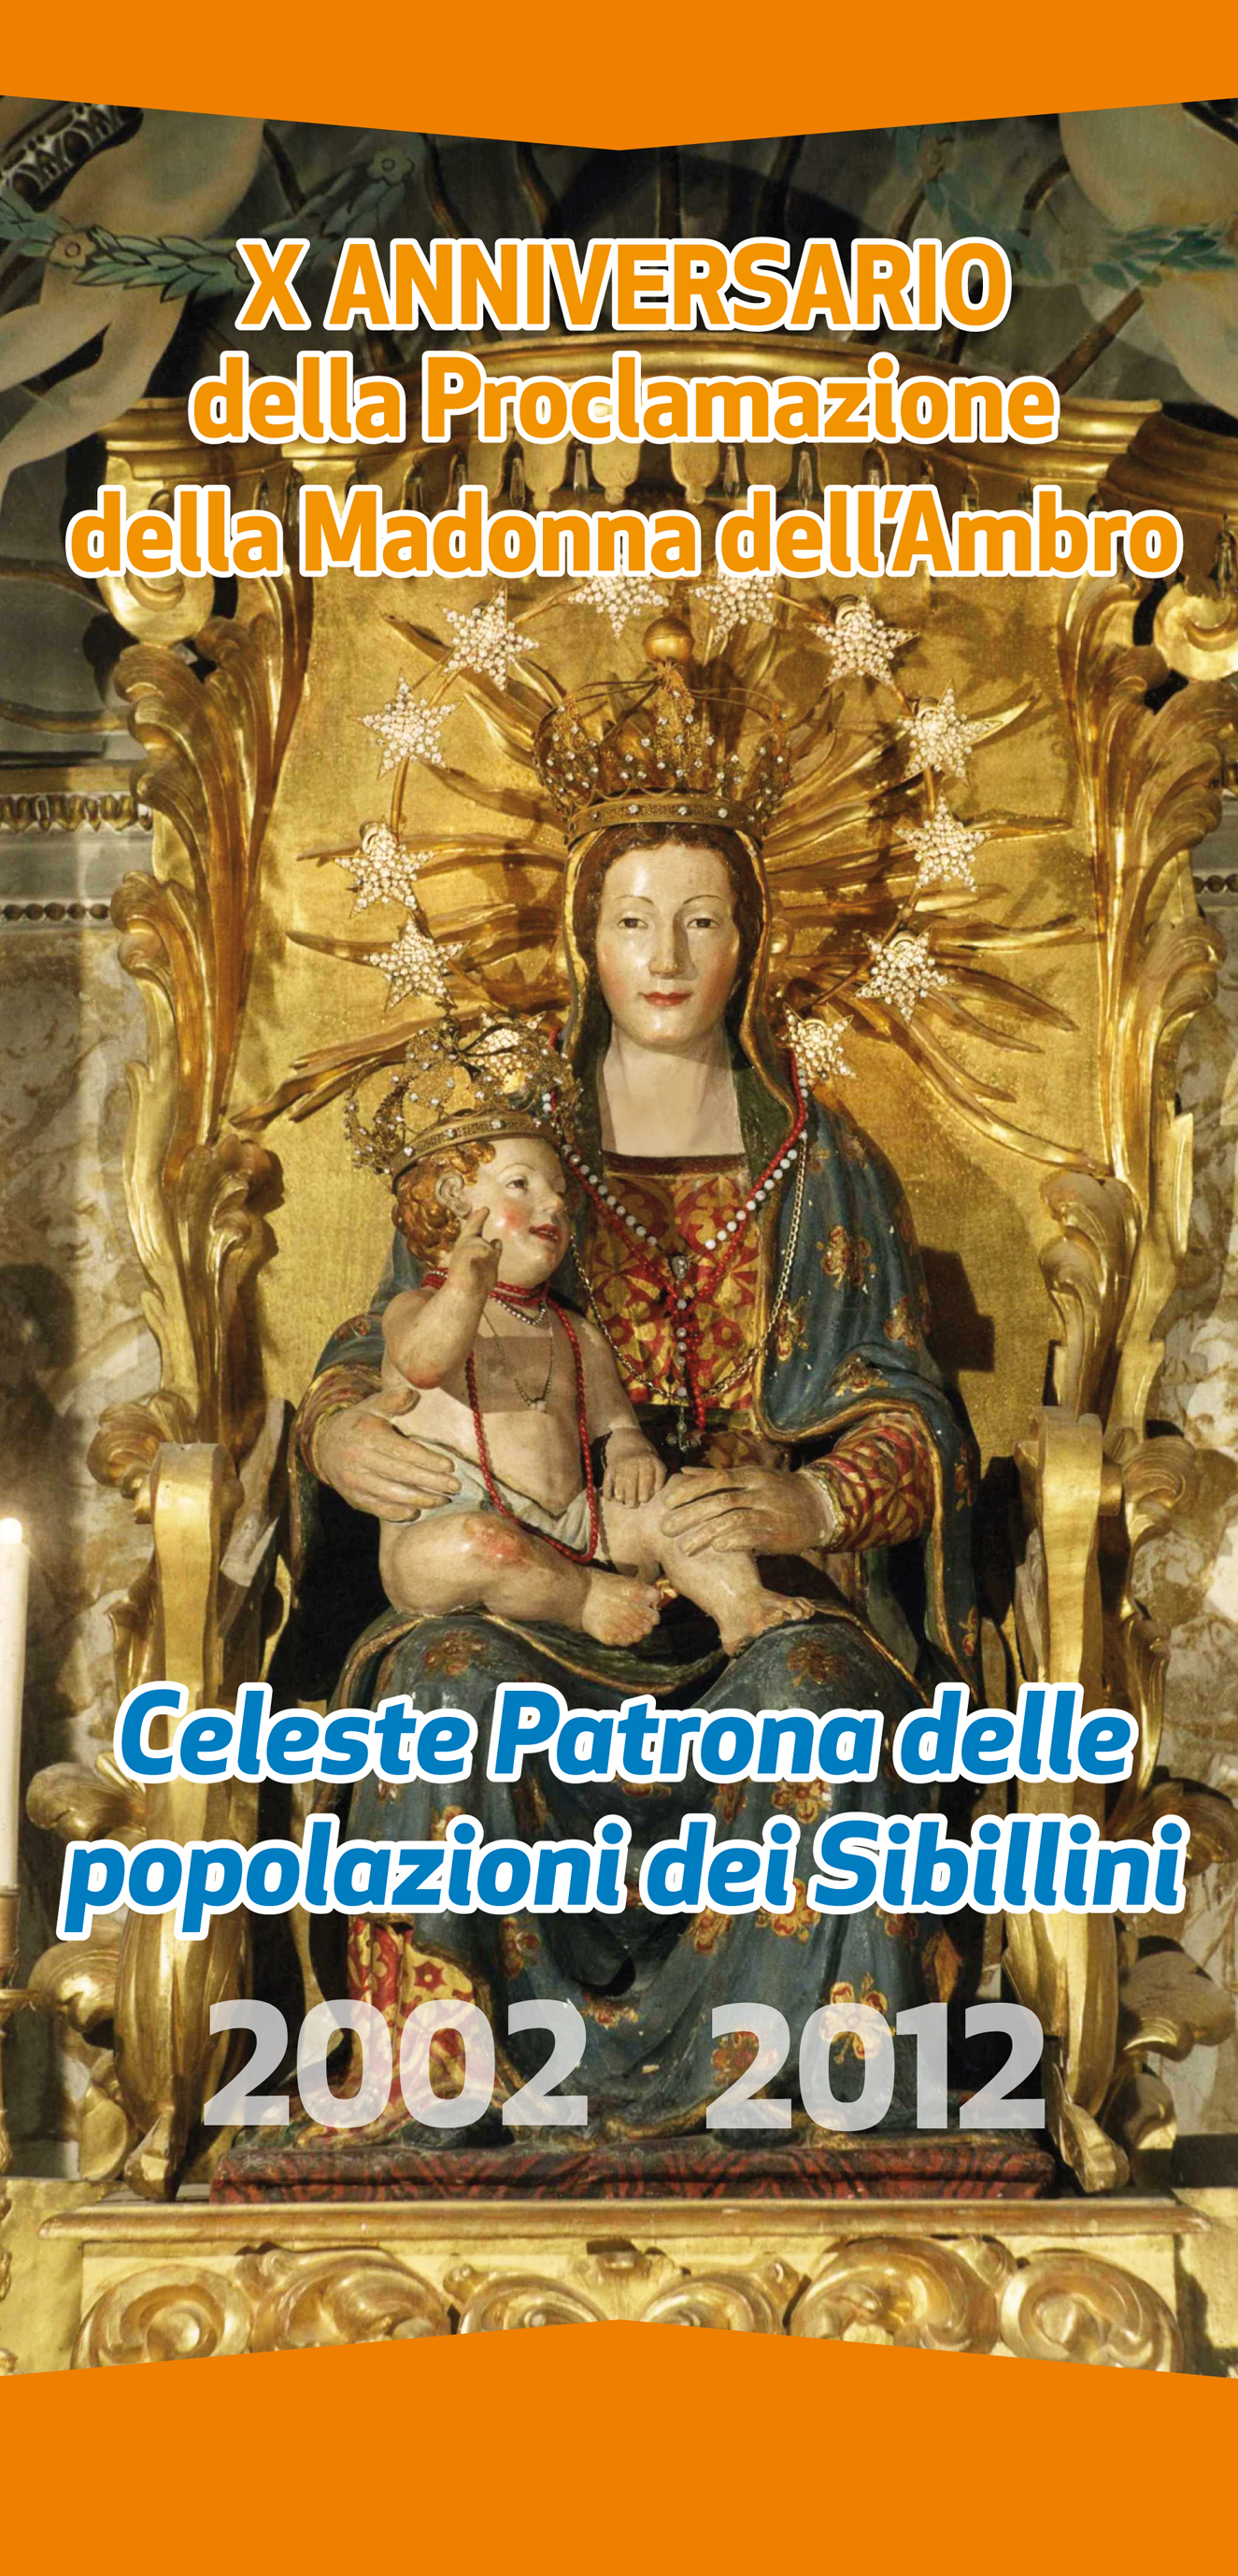 Nel decimo anniversario della proclamazione della Madonna dell'Ambro Celeste Patrona delle popolazioni dei Monti Sibillini l'Arcivescovo celebrerà l'Eucaristia